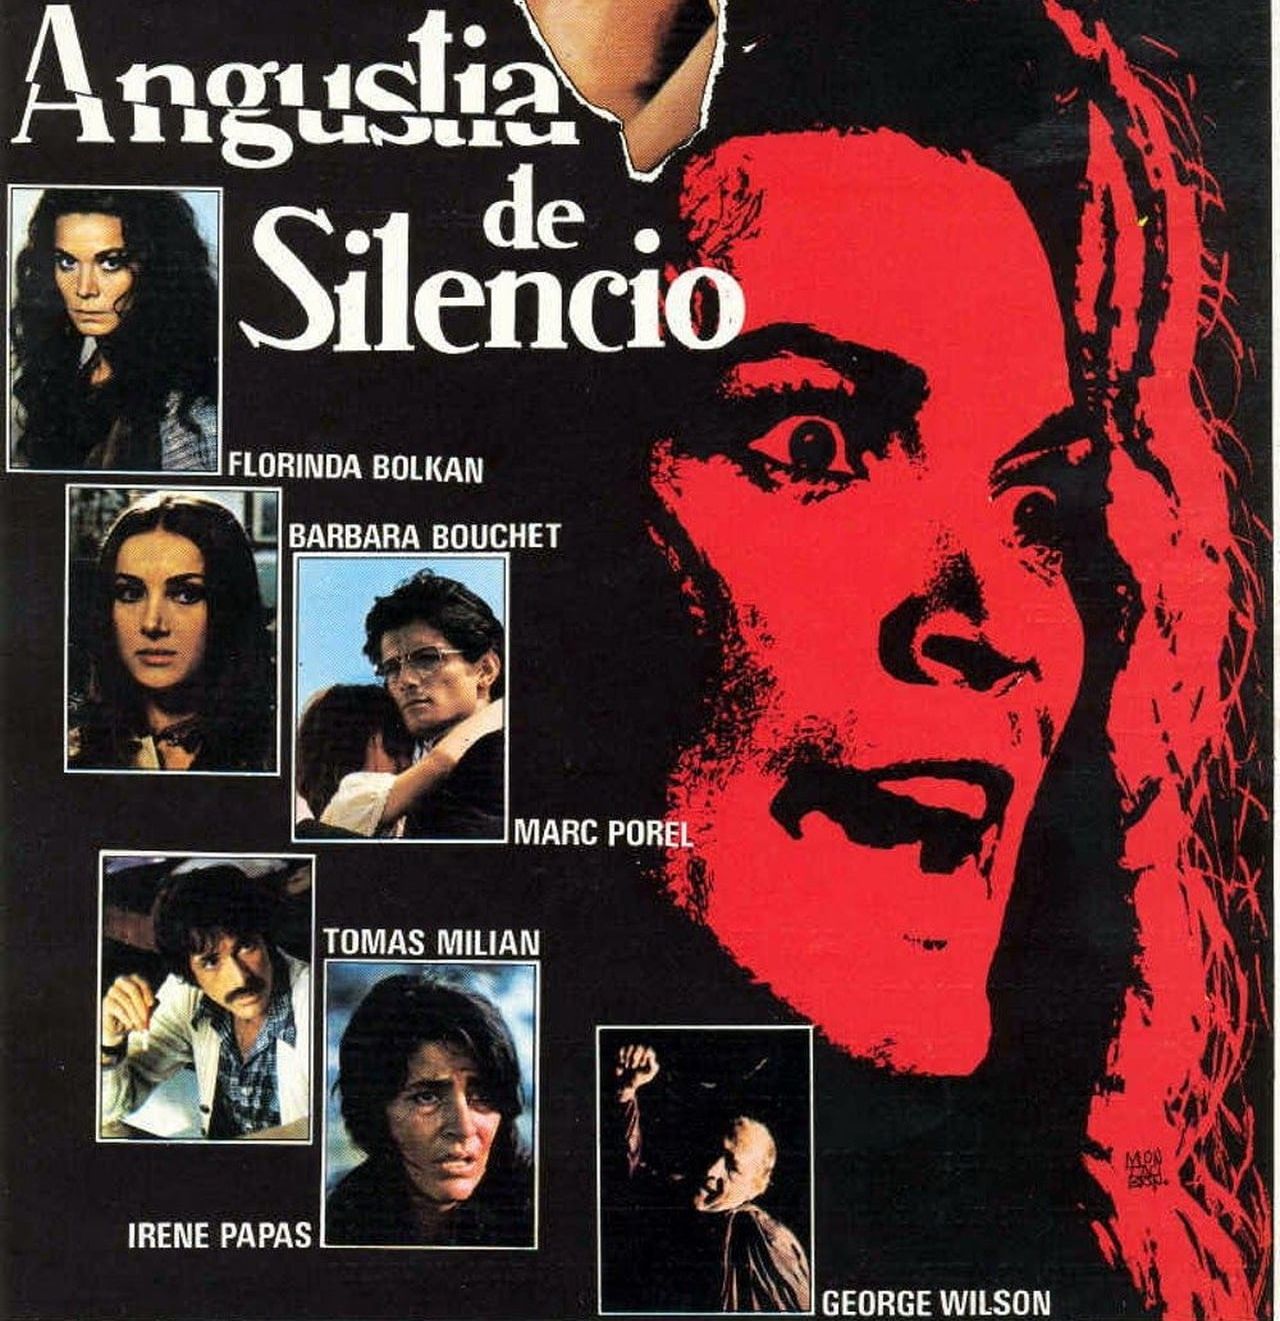 Irene Papas integró el elenco del film italiano "Angustia de silencio". (Mubi)